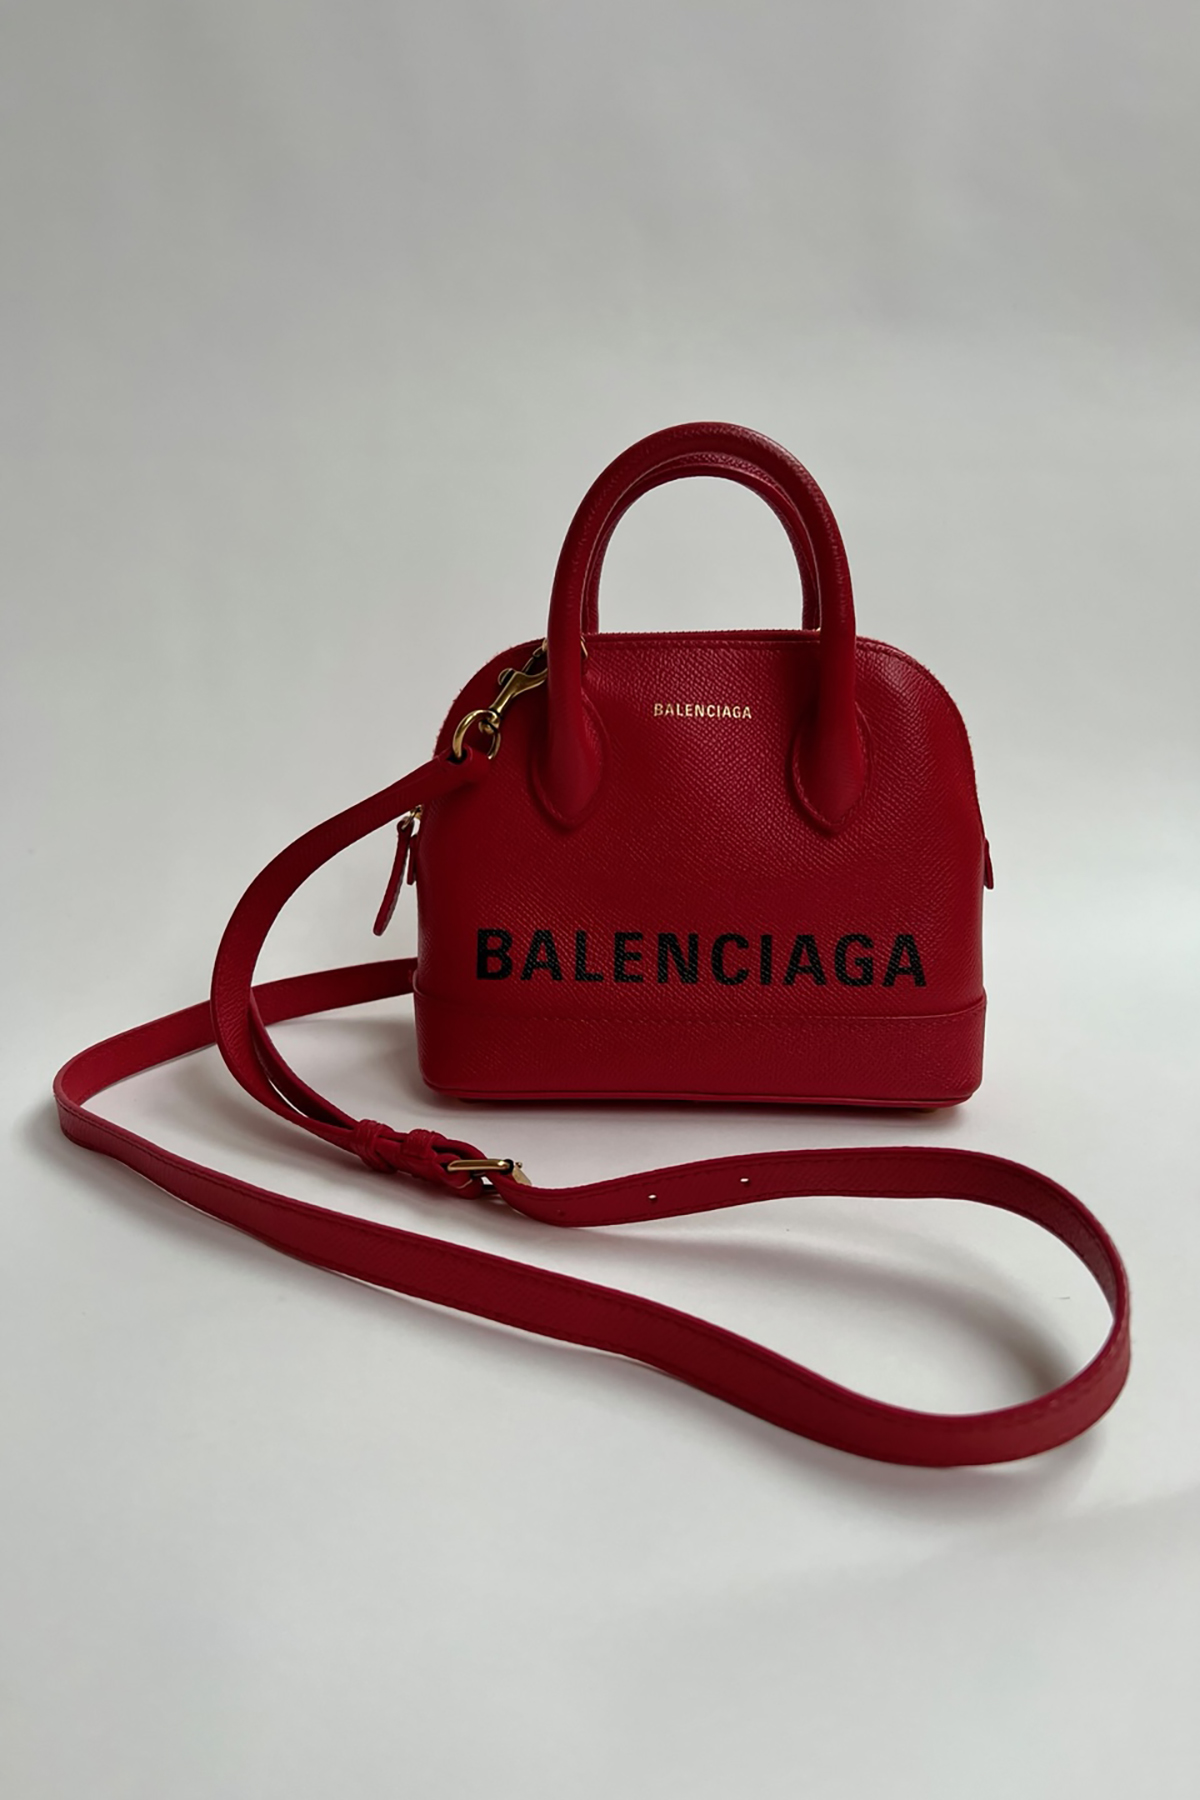 Balenciaga Bag - Red With Dustbag